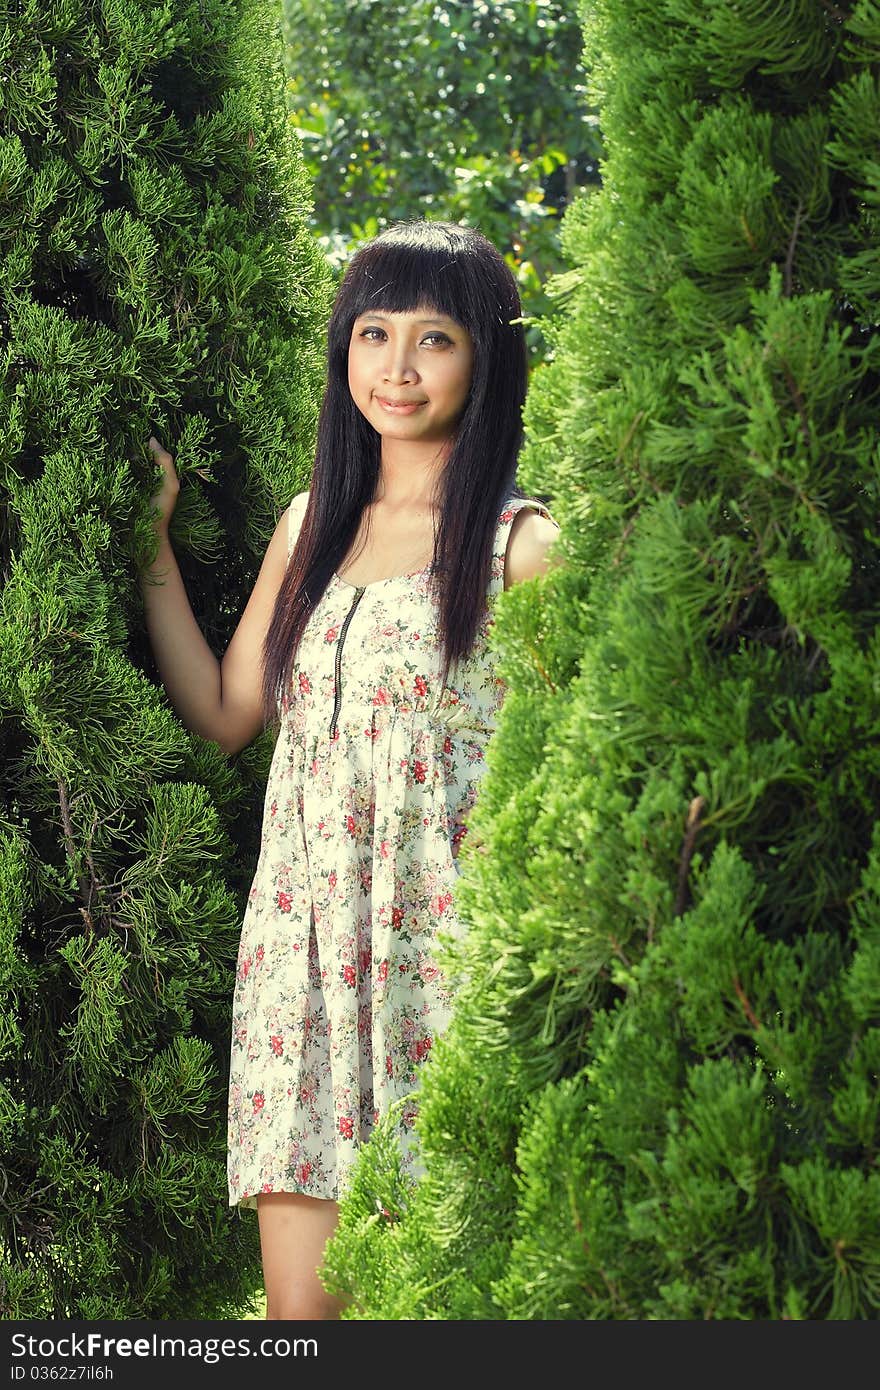 Young beautiful girl wearing dress smiling outdoor near pine tree. Young beautiful girl wearing dress smiling outdoor near pine tree